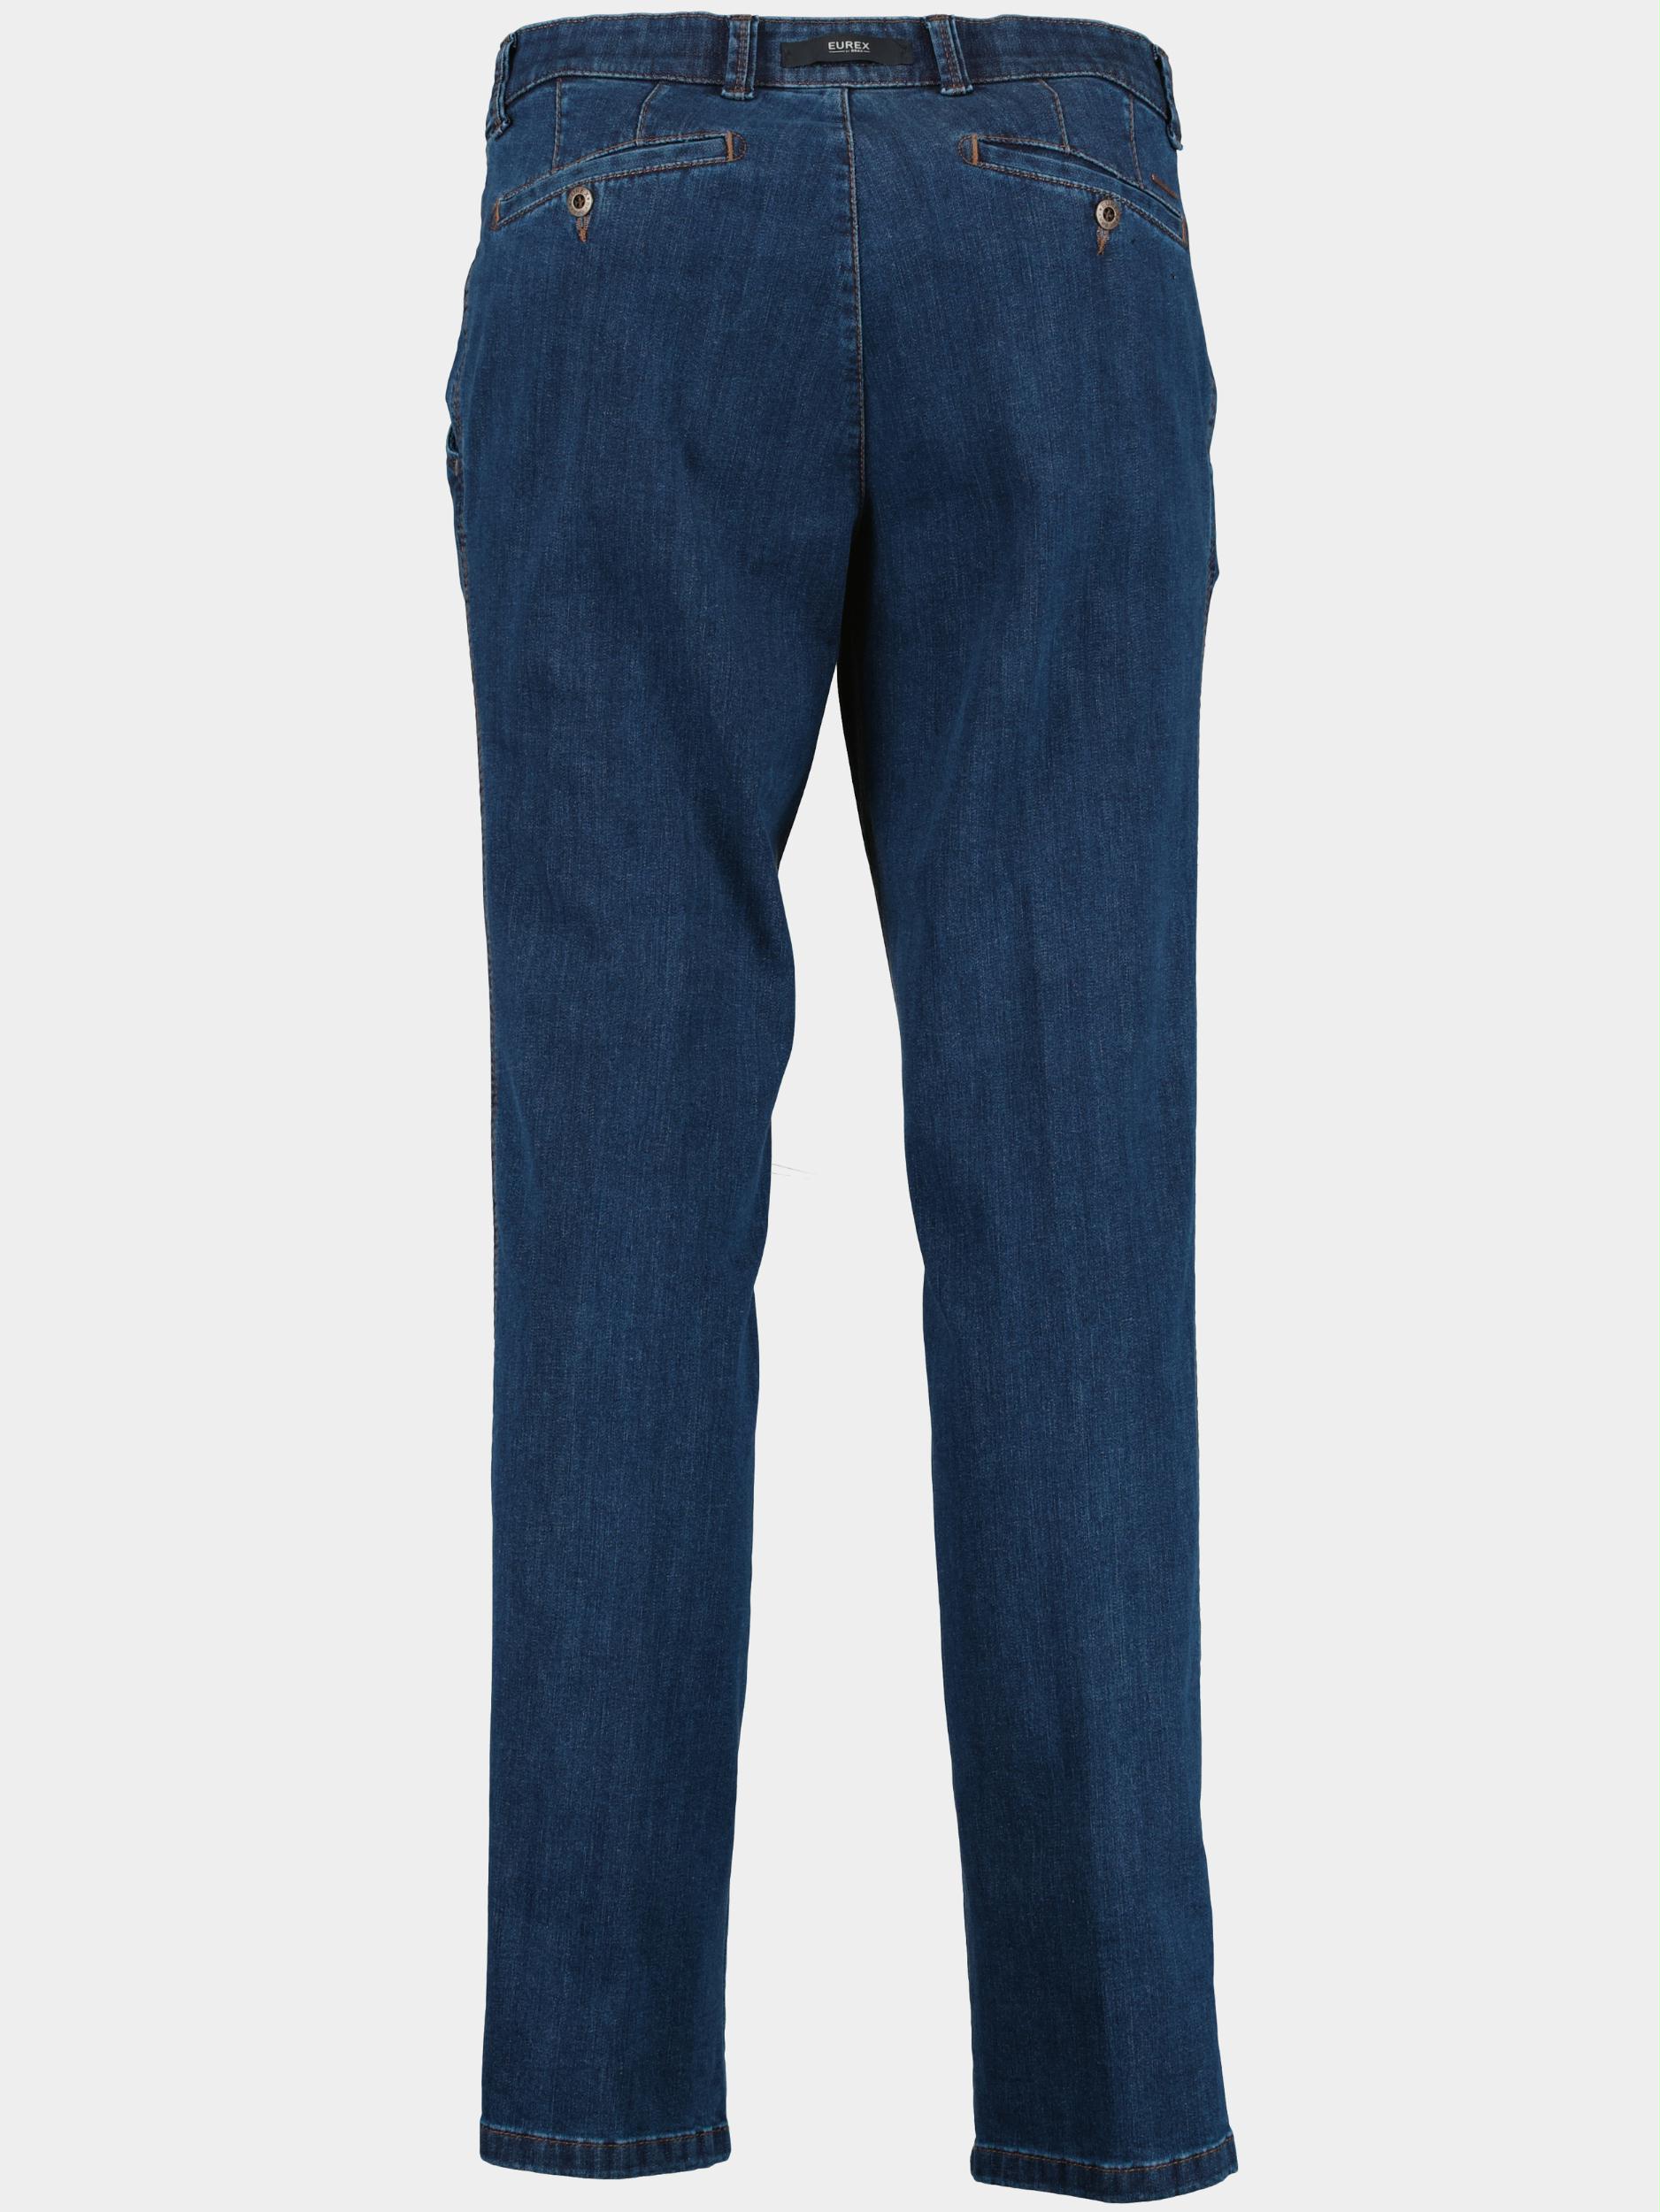 Brax Flatfront Jeans Blauw JIM 50-6000 05931620/25